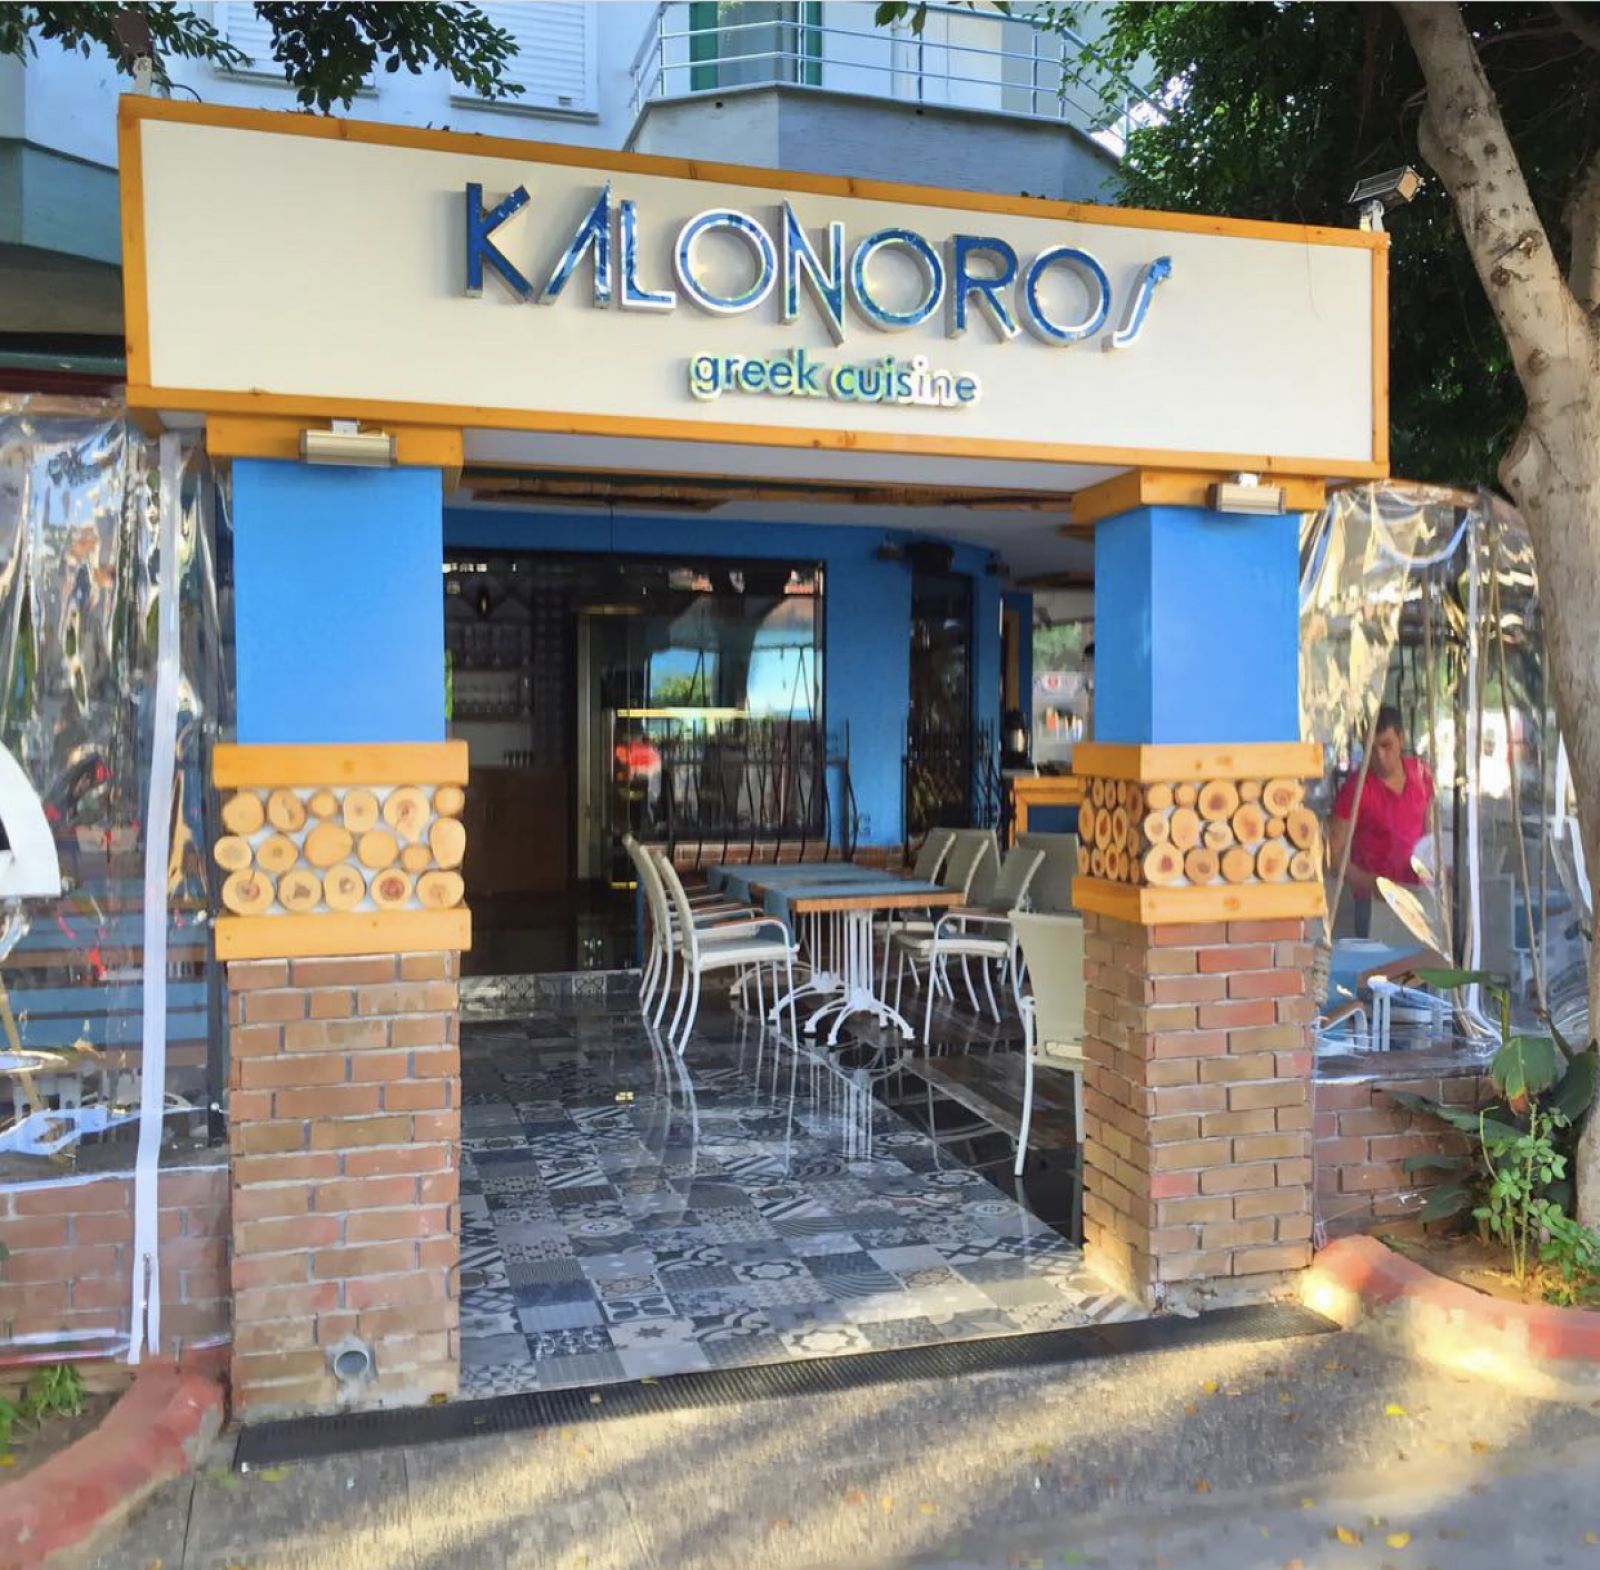 KALONOROS Greek Cuisine